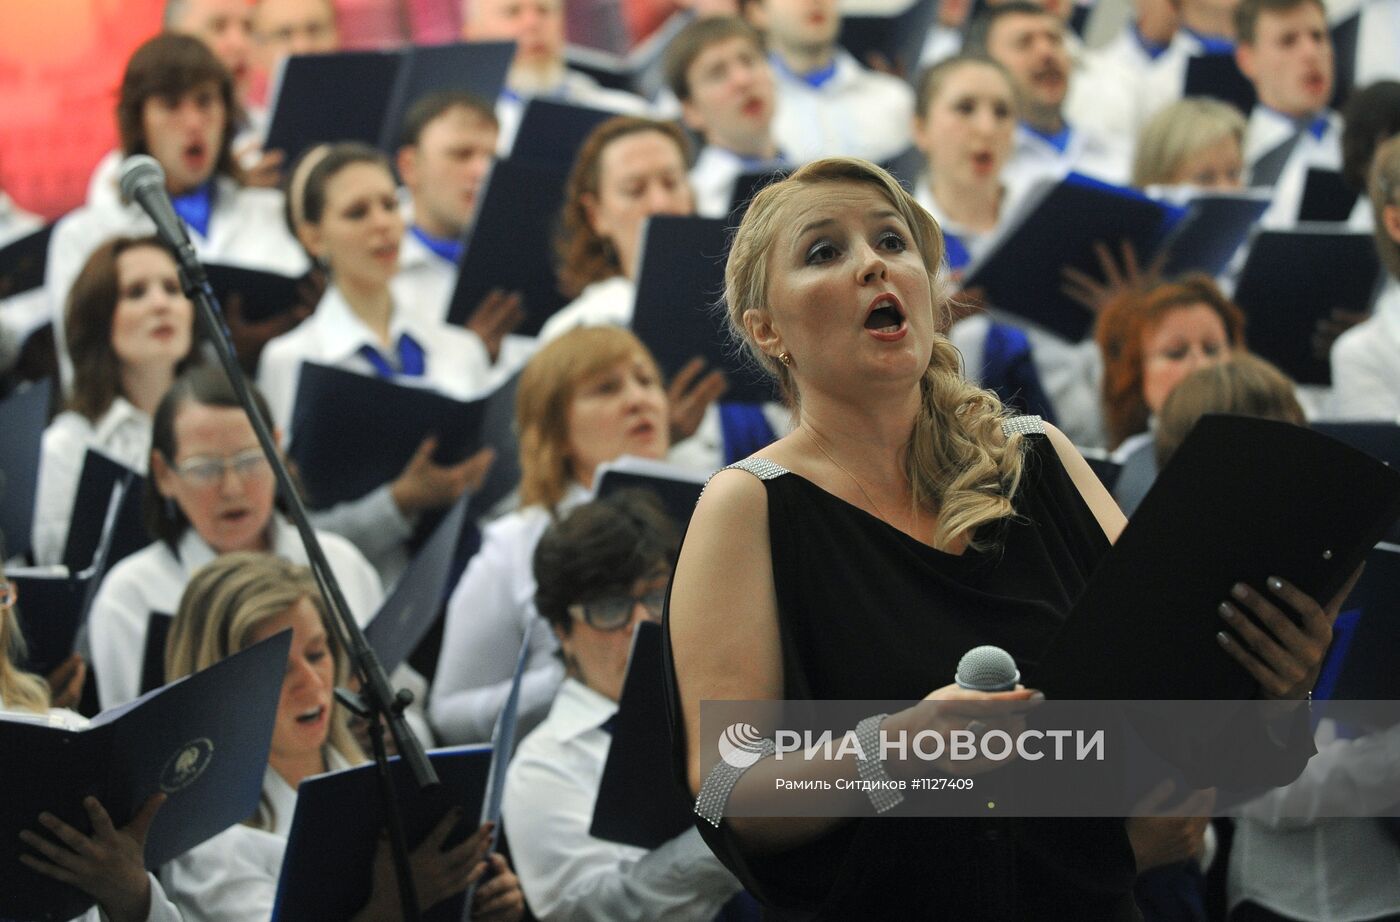 Ночной концерт в Московском метрополитене